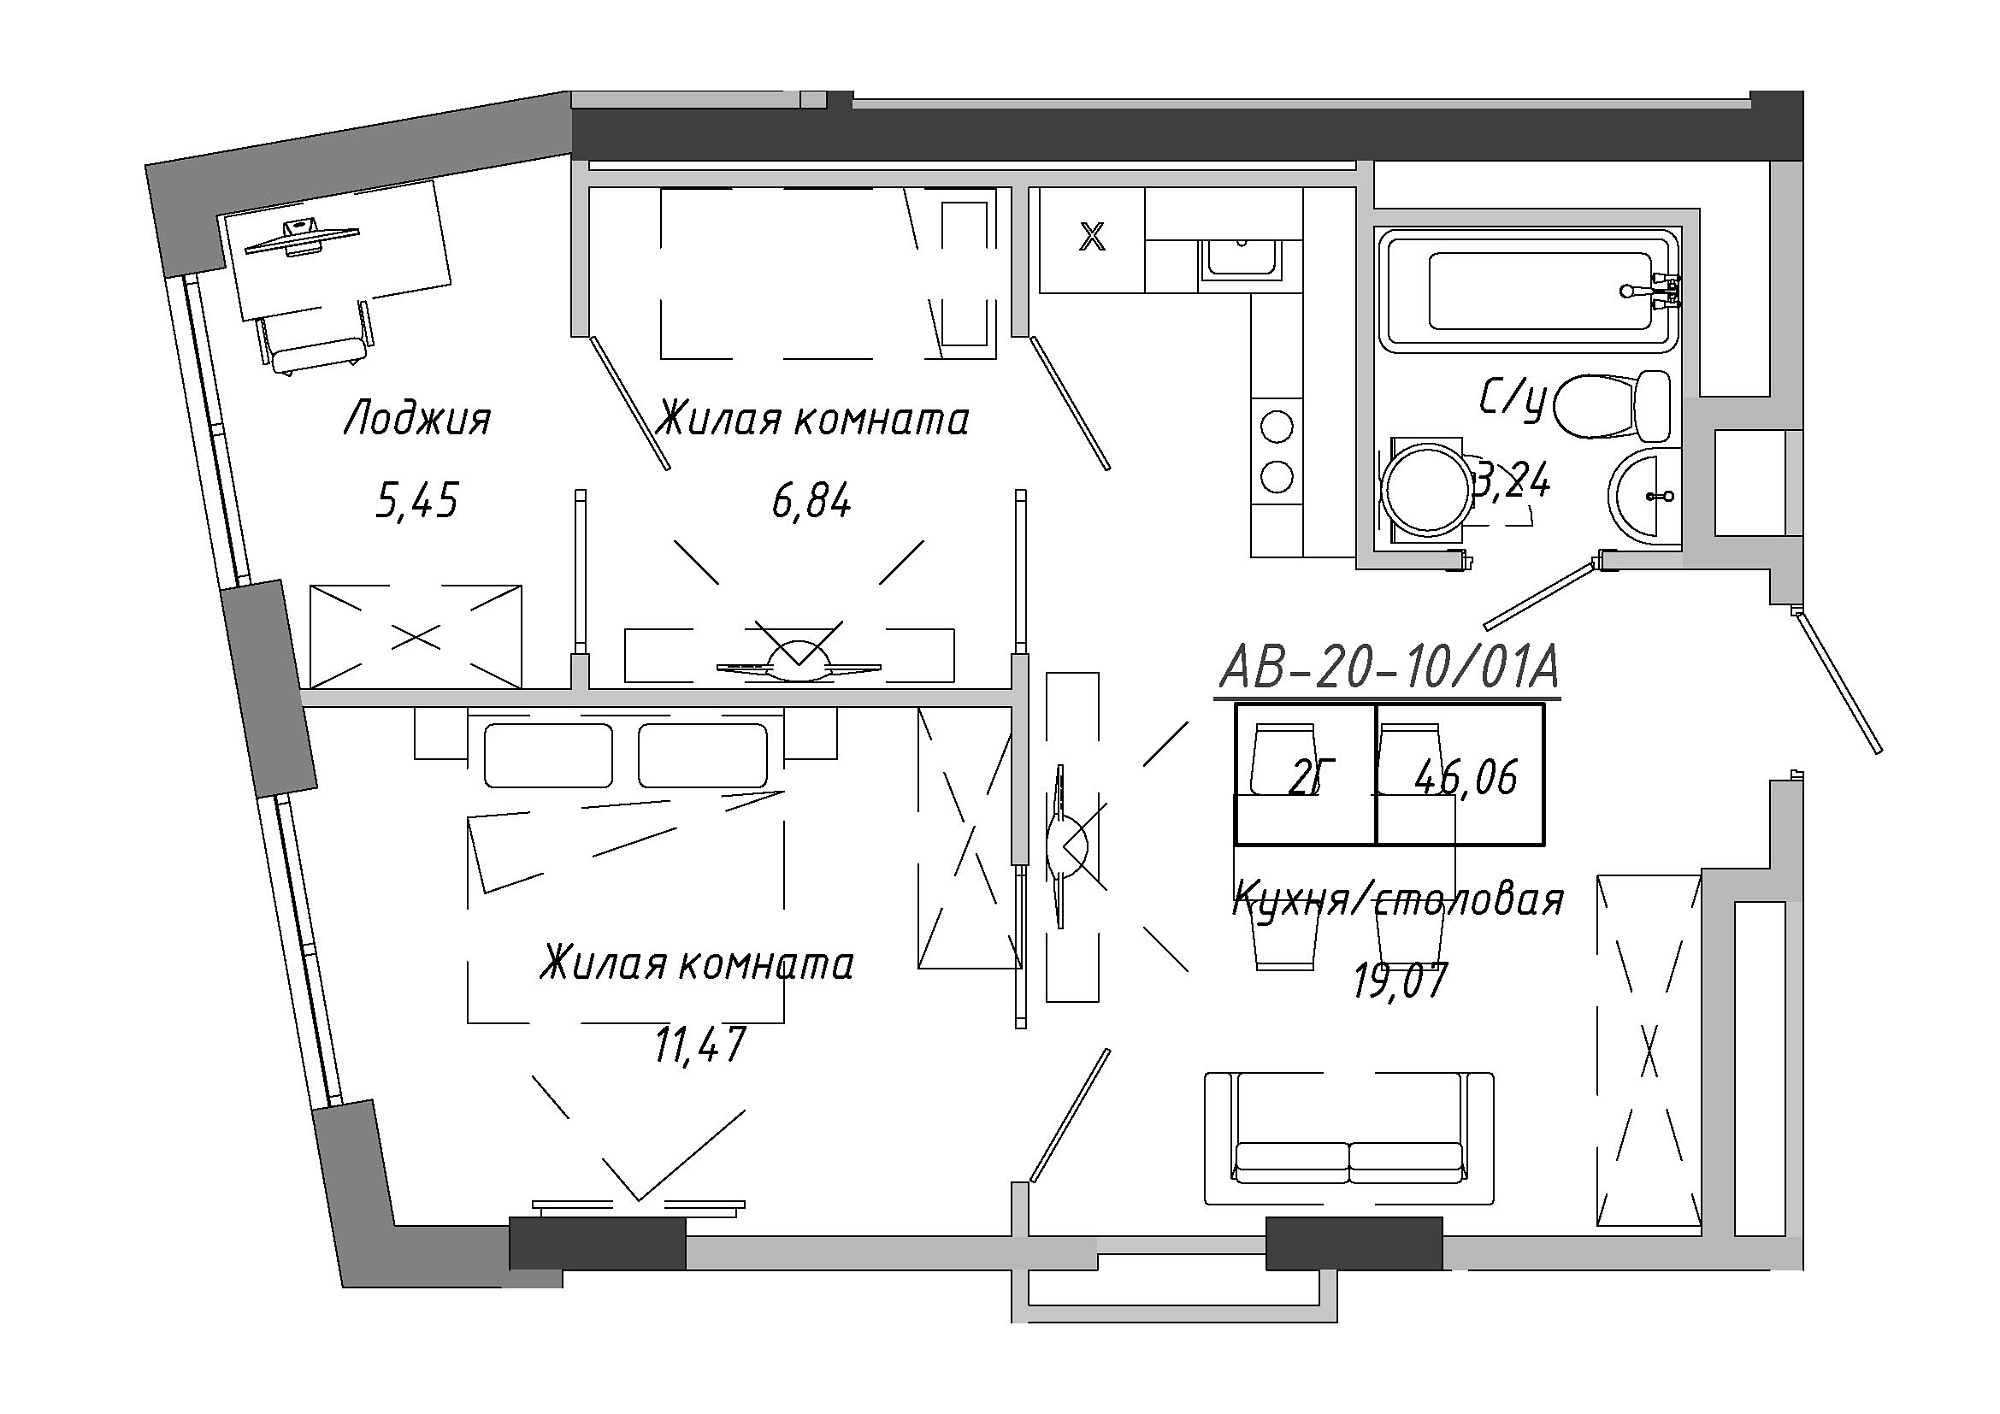 Планування 2-к квартира площею 45.99м2, AB-20-10/0001а.